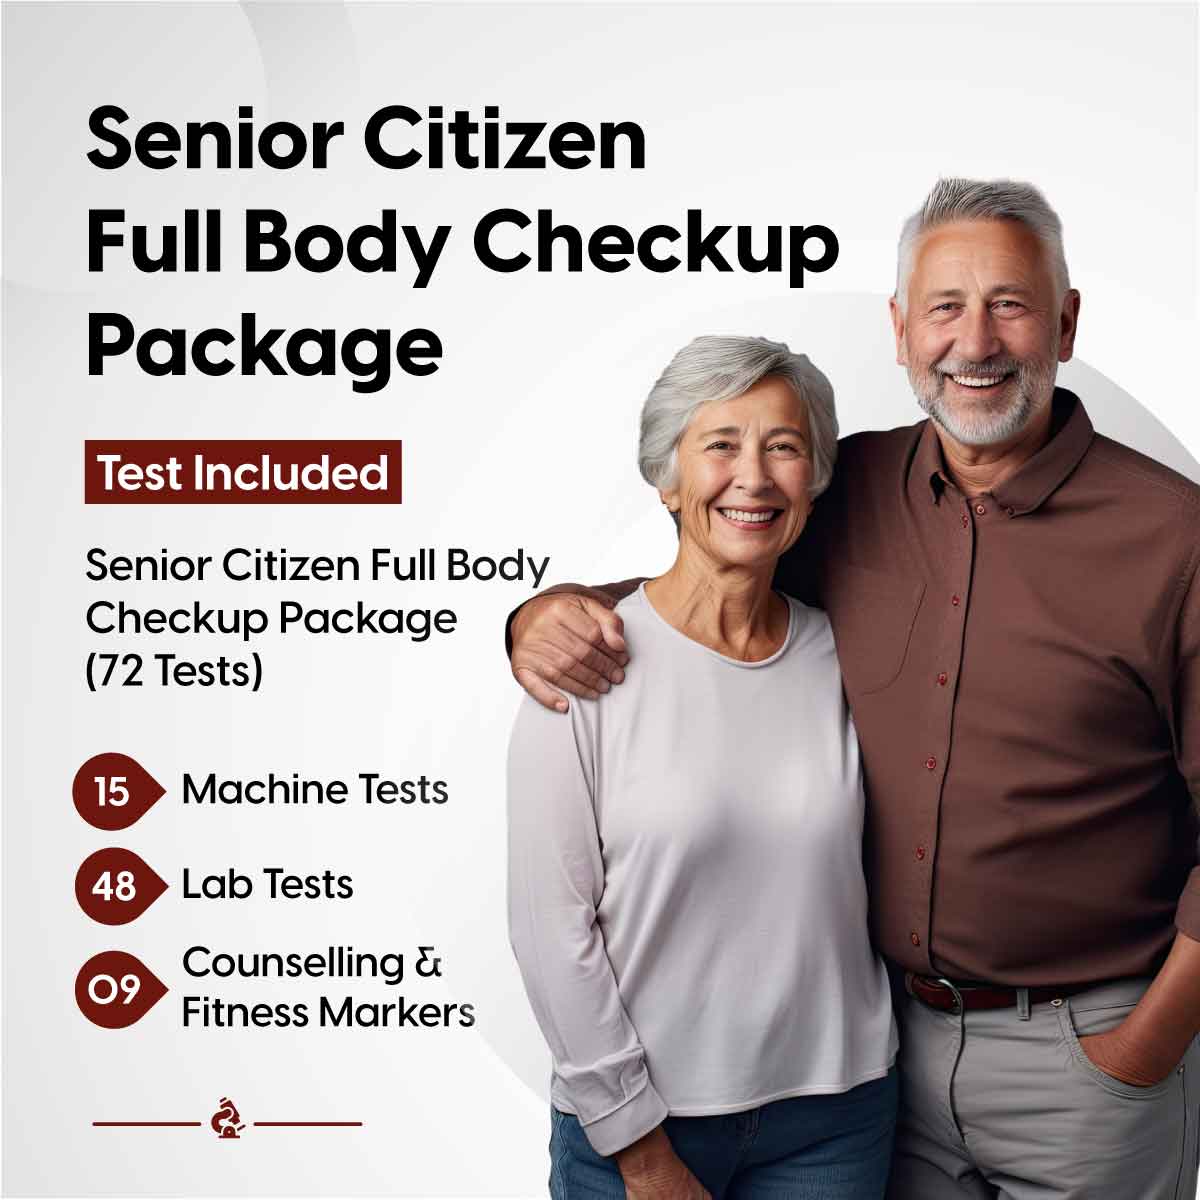 Senior Citizen Full Body Checkup Package